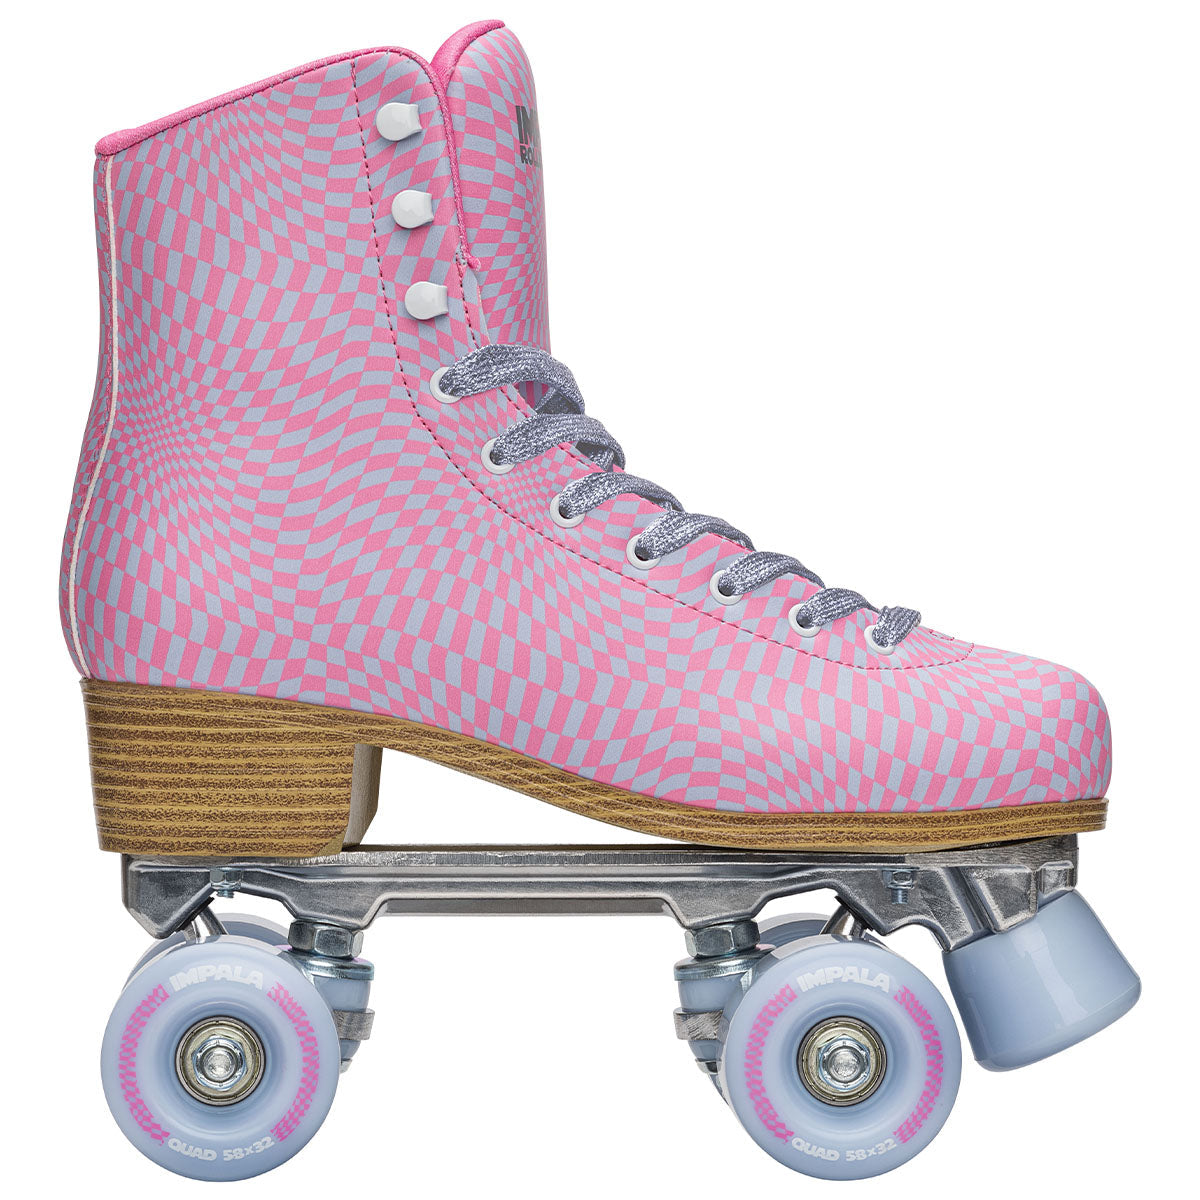 verwijzen Stressvol Mens Roller Skates kopen? Bekijk ons nieuwe assortiment rollerskates! – The Old  Man Boardsports